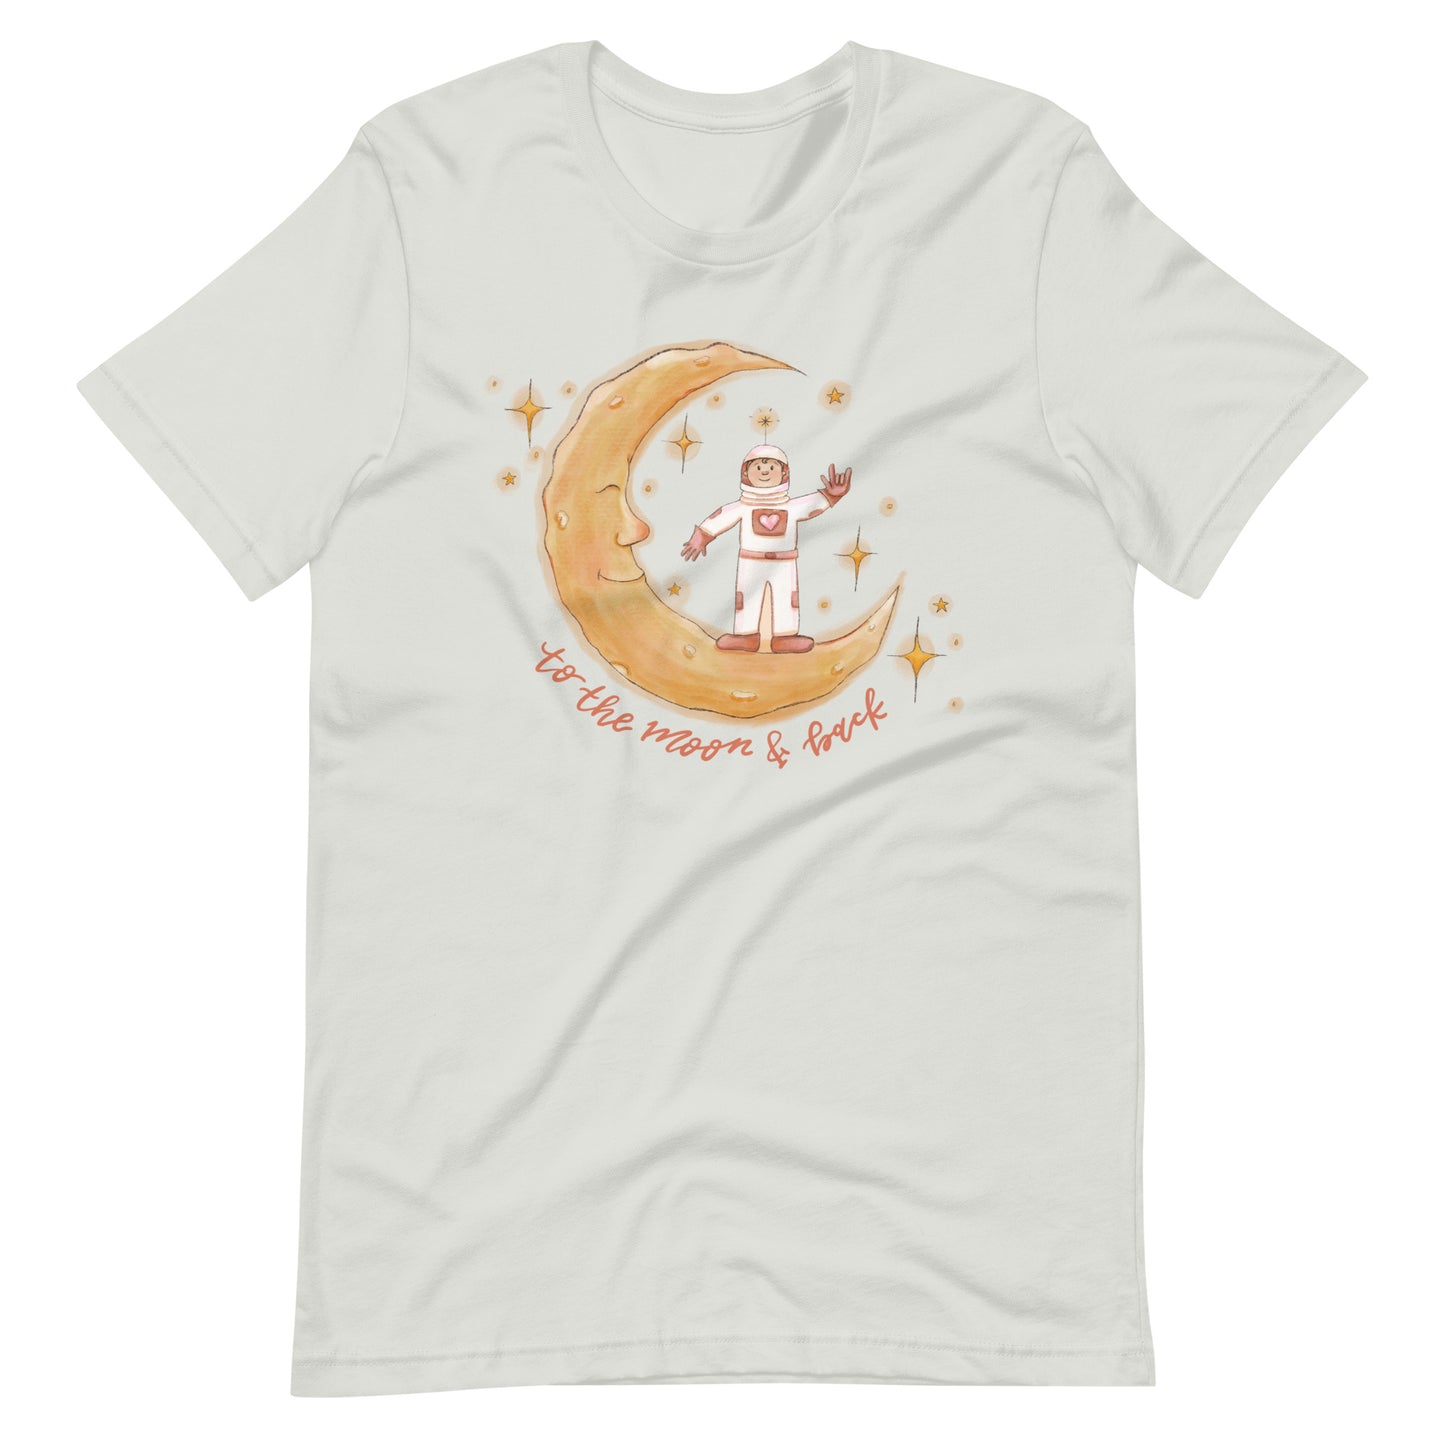 Love Astronaut shirt